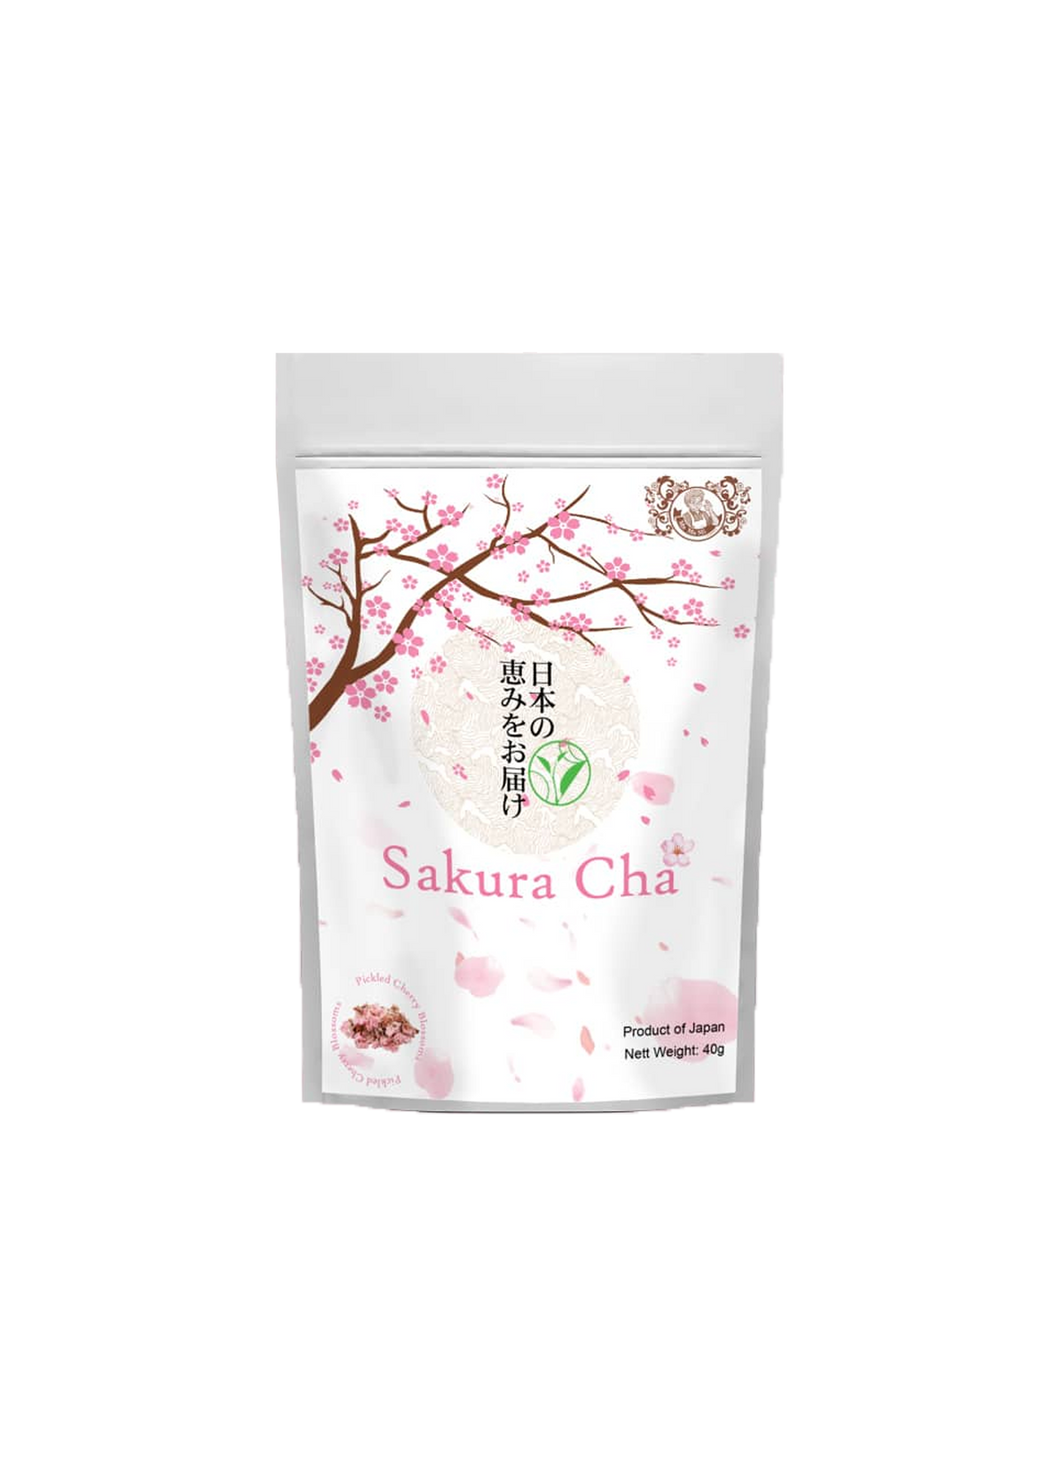 Sakura Cha Salt Pickled Cherry Blossoms Tea 40g